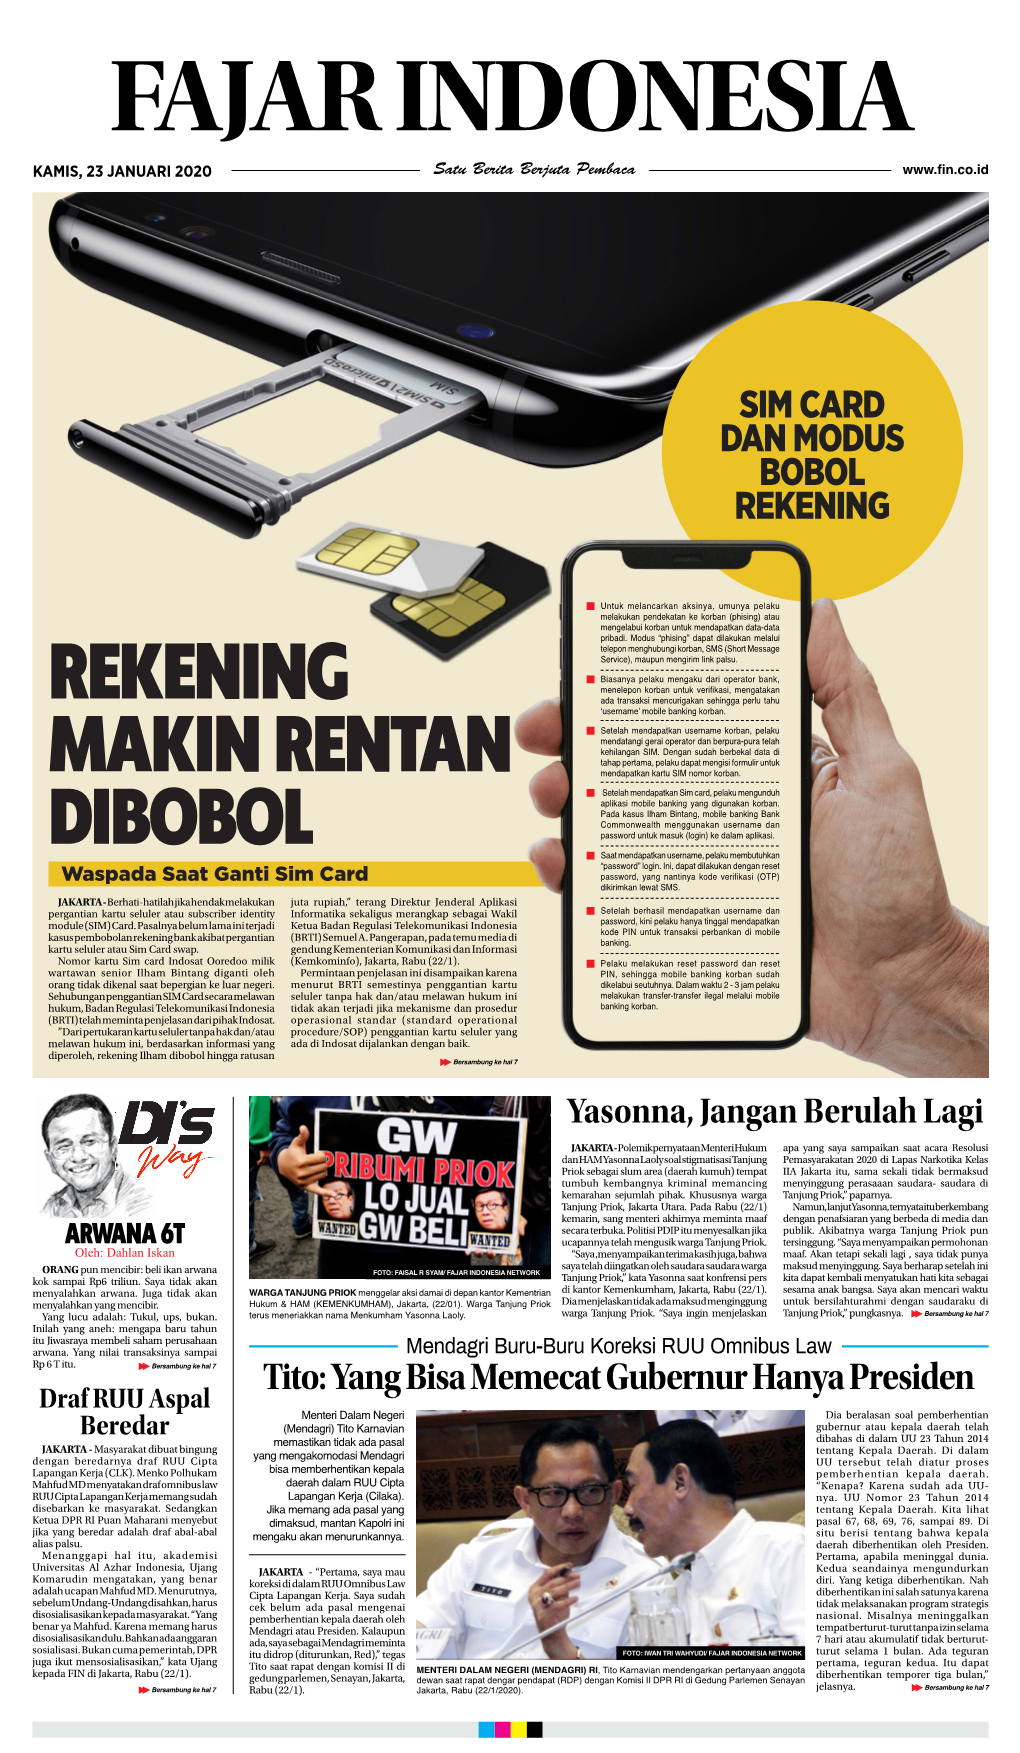 Epaper Fajar Indonesia Network, Kamis 23 Januari 2020